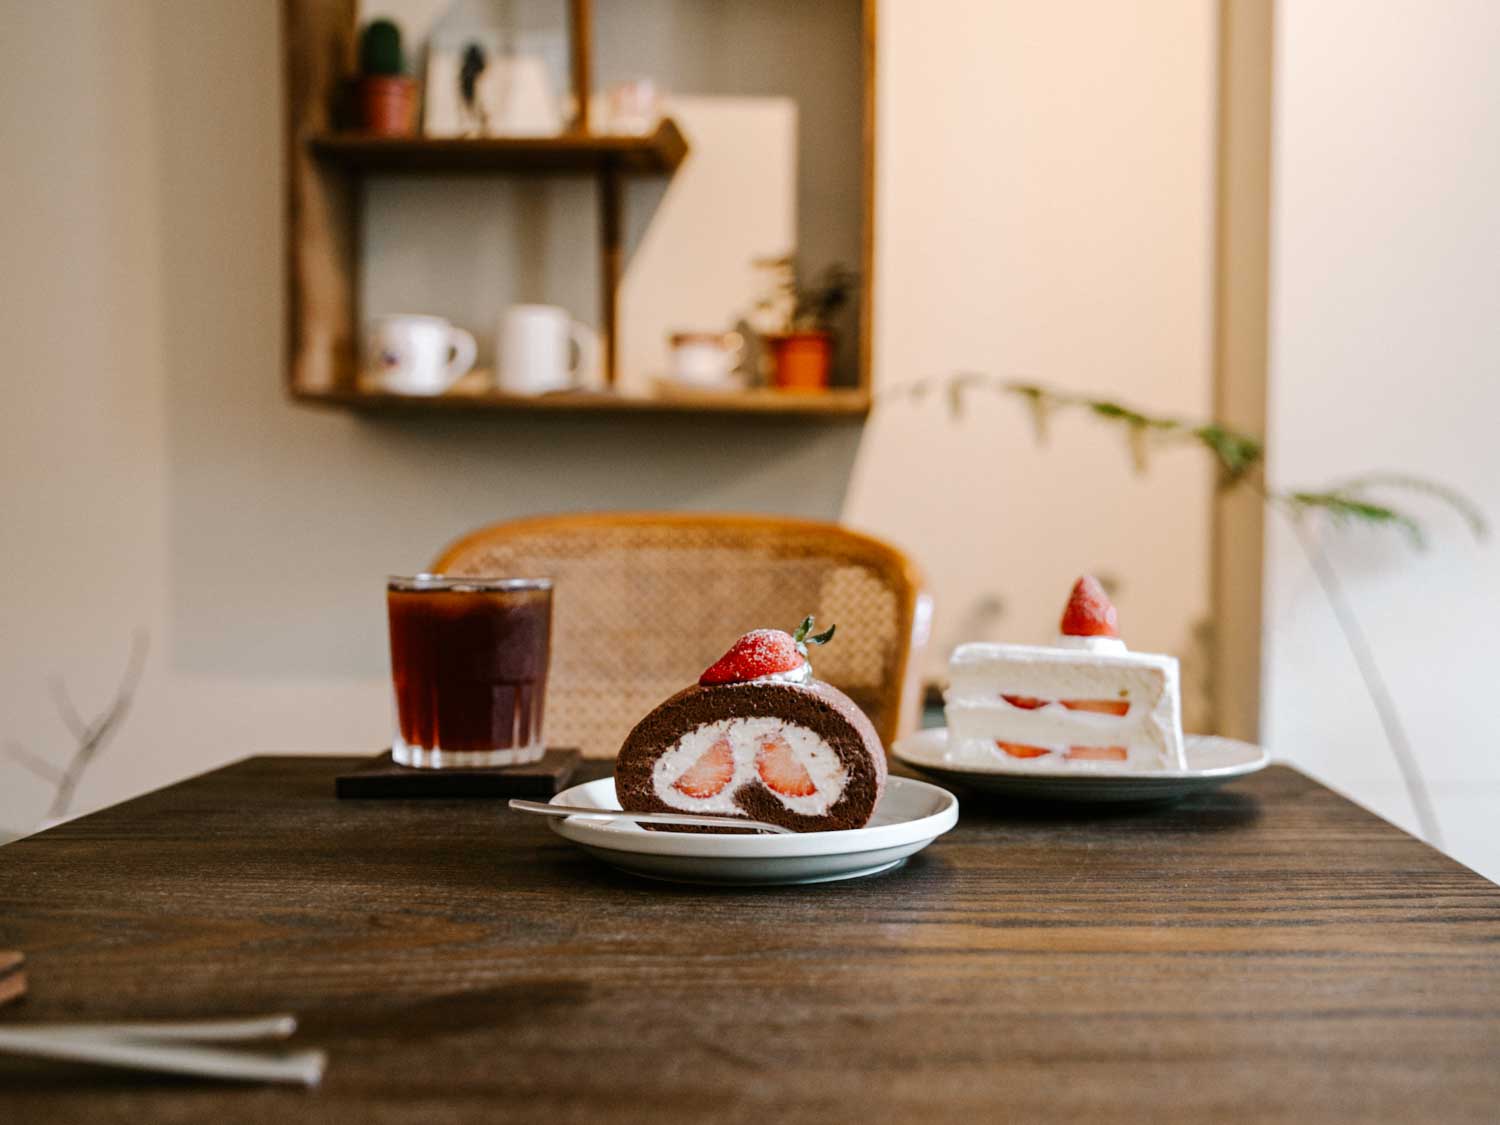 竹北咖啡廳-歲月靜好 竹北下午茶推薦！享受一口蛋糕一口手沖咖啡的悠閒。